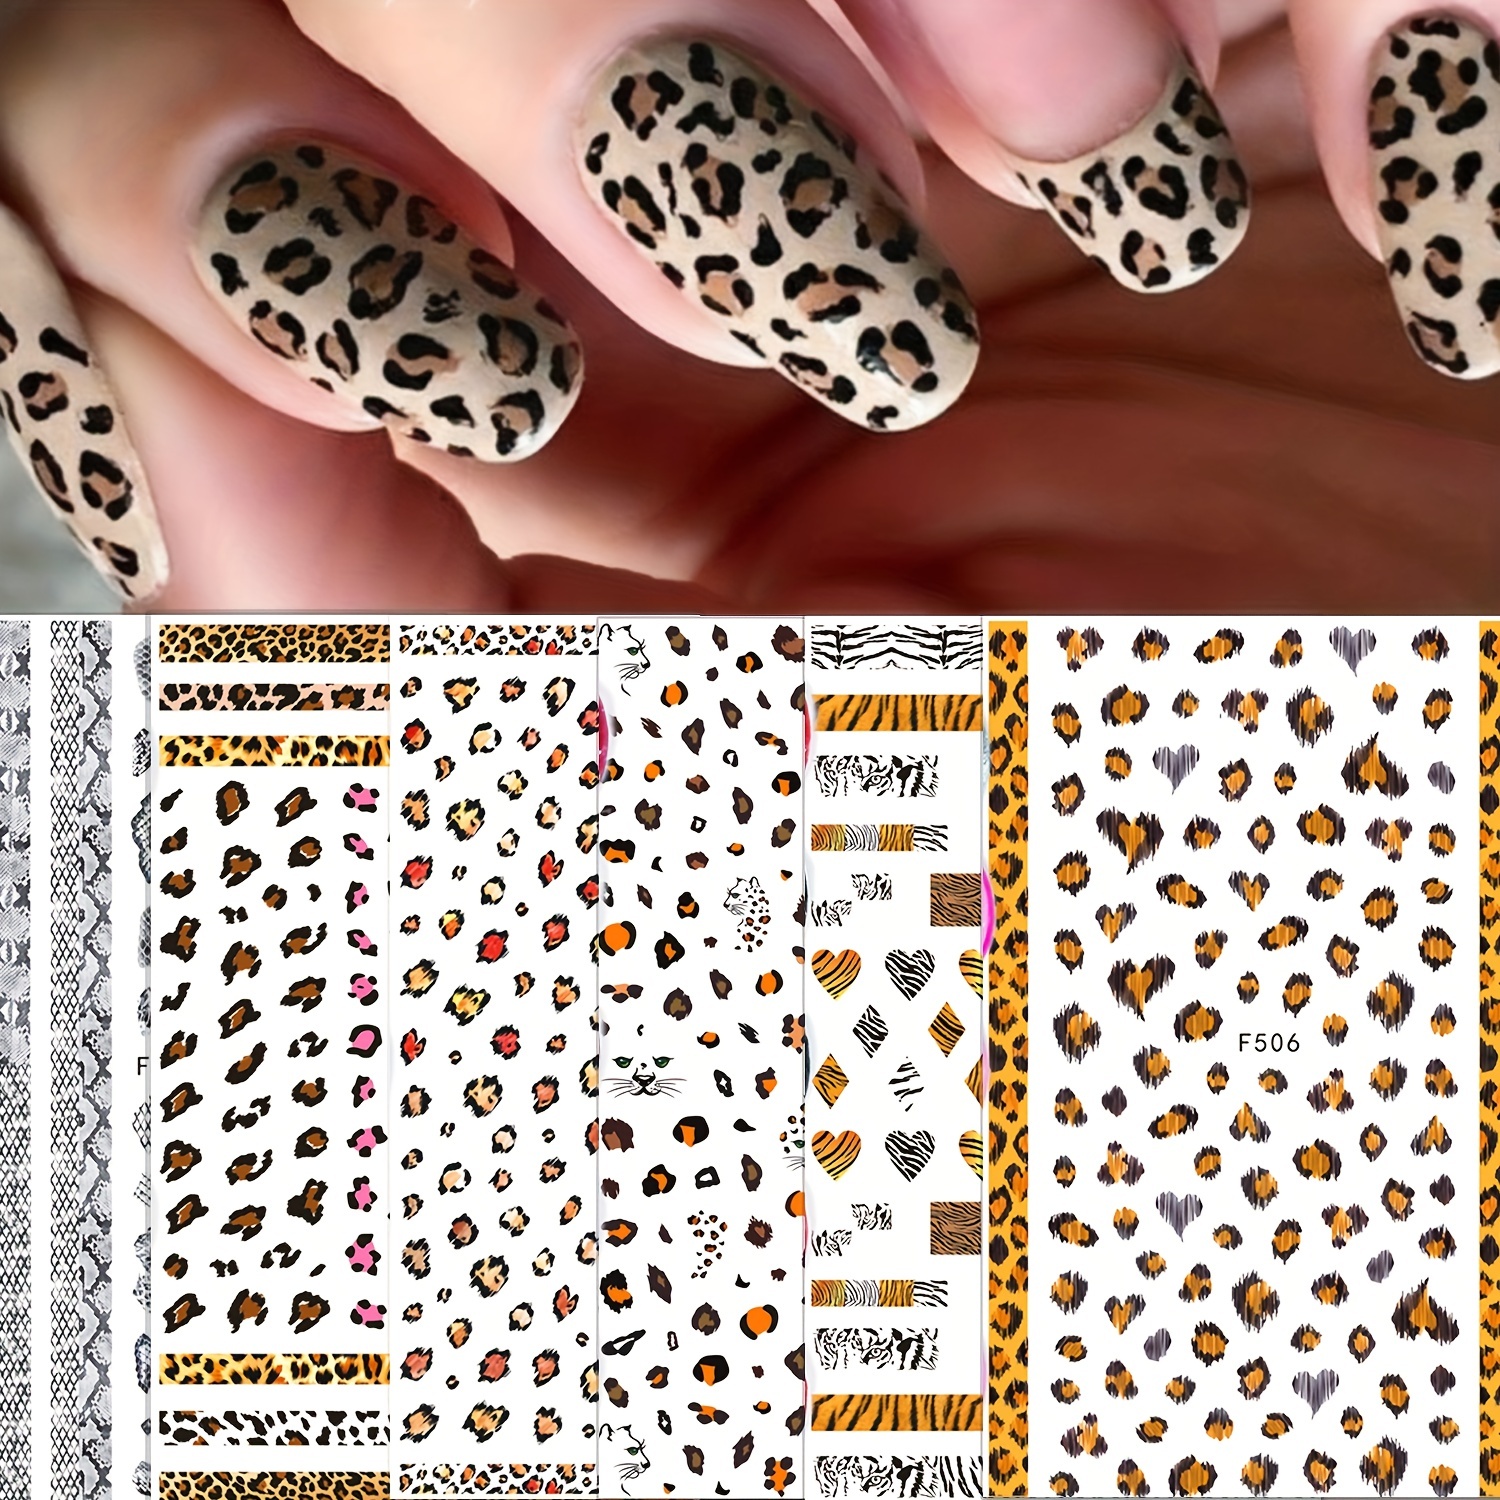 

6 Sheets, Leopard Print Nail Art Stickers - Self-adhesive Tiger Print Pegatinas For Diy Nail Art Designs